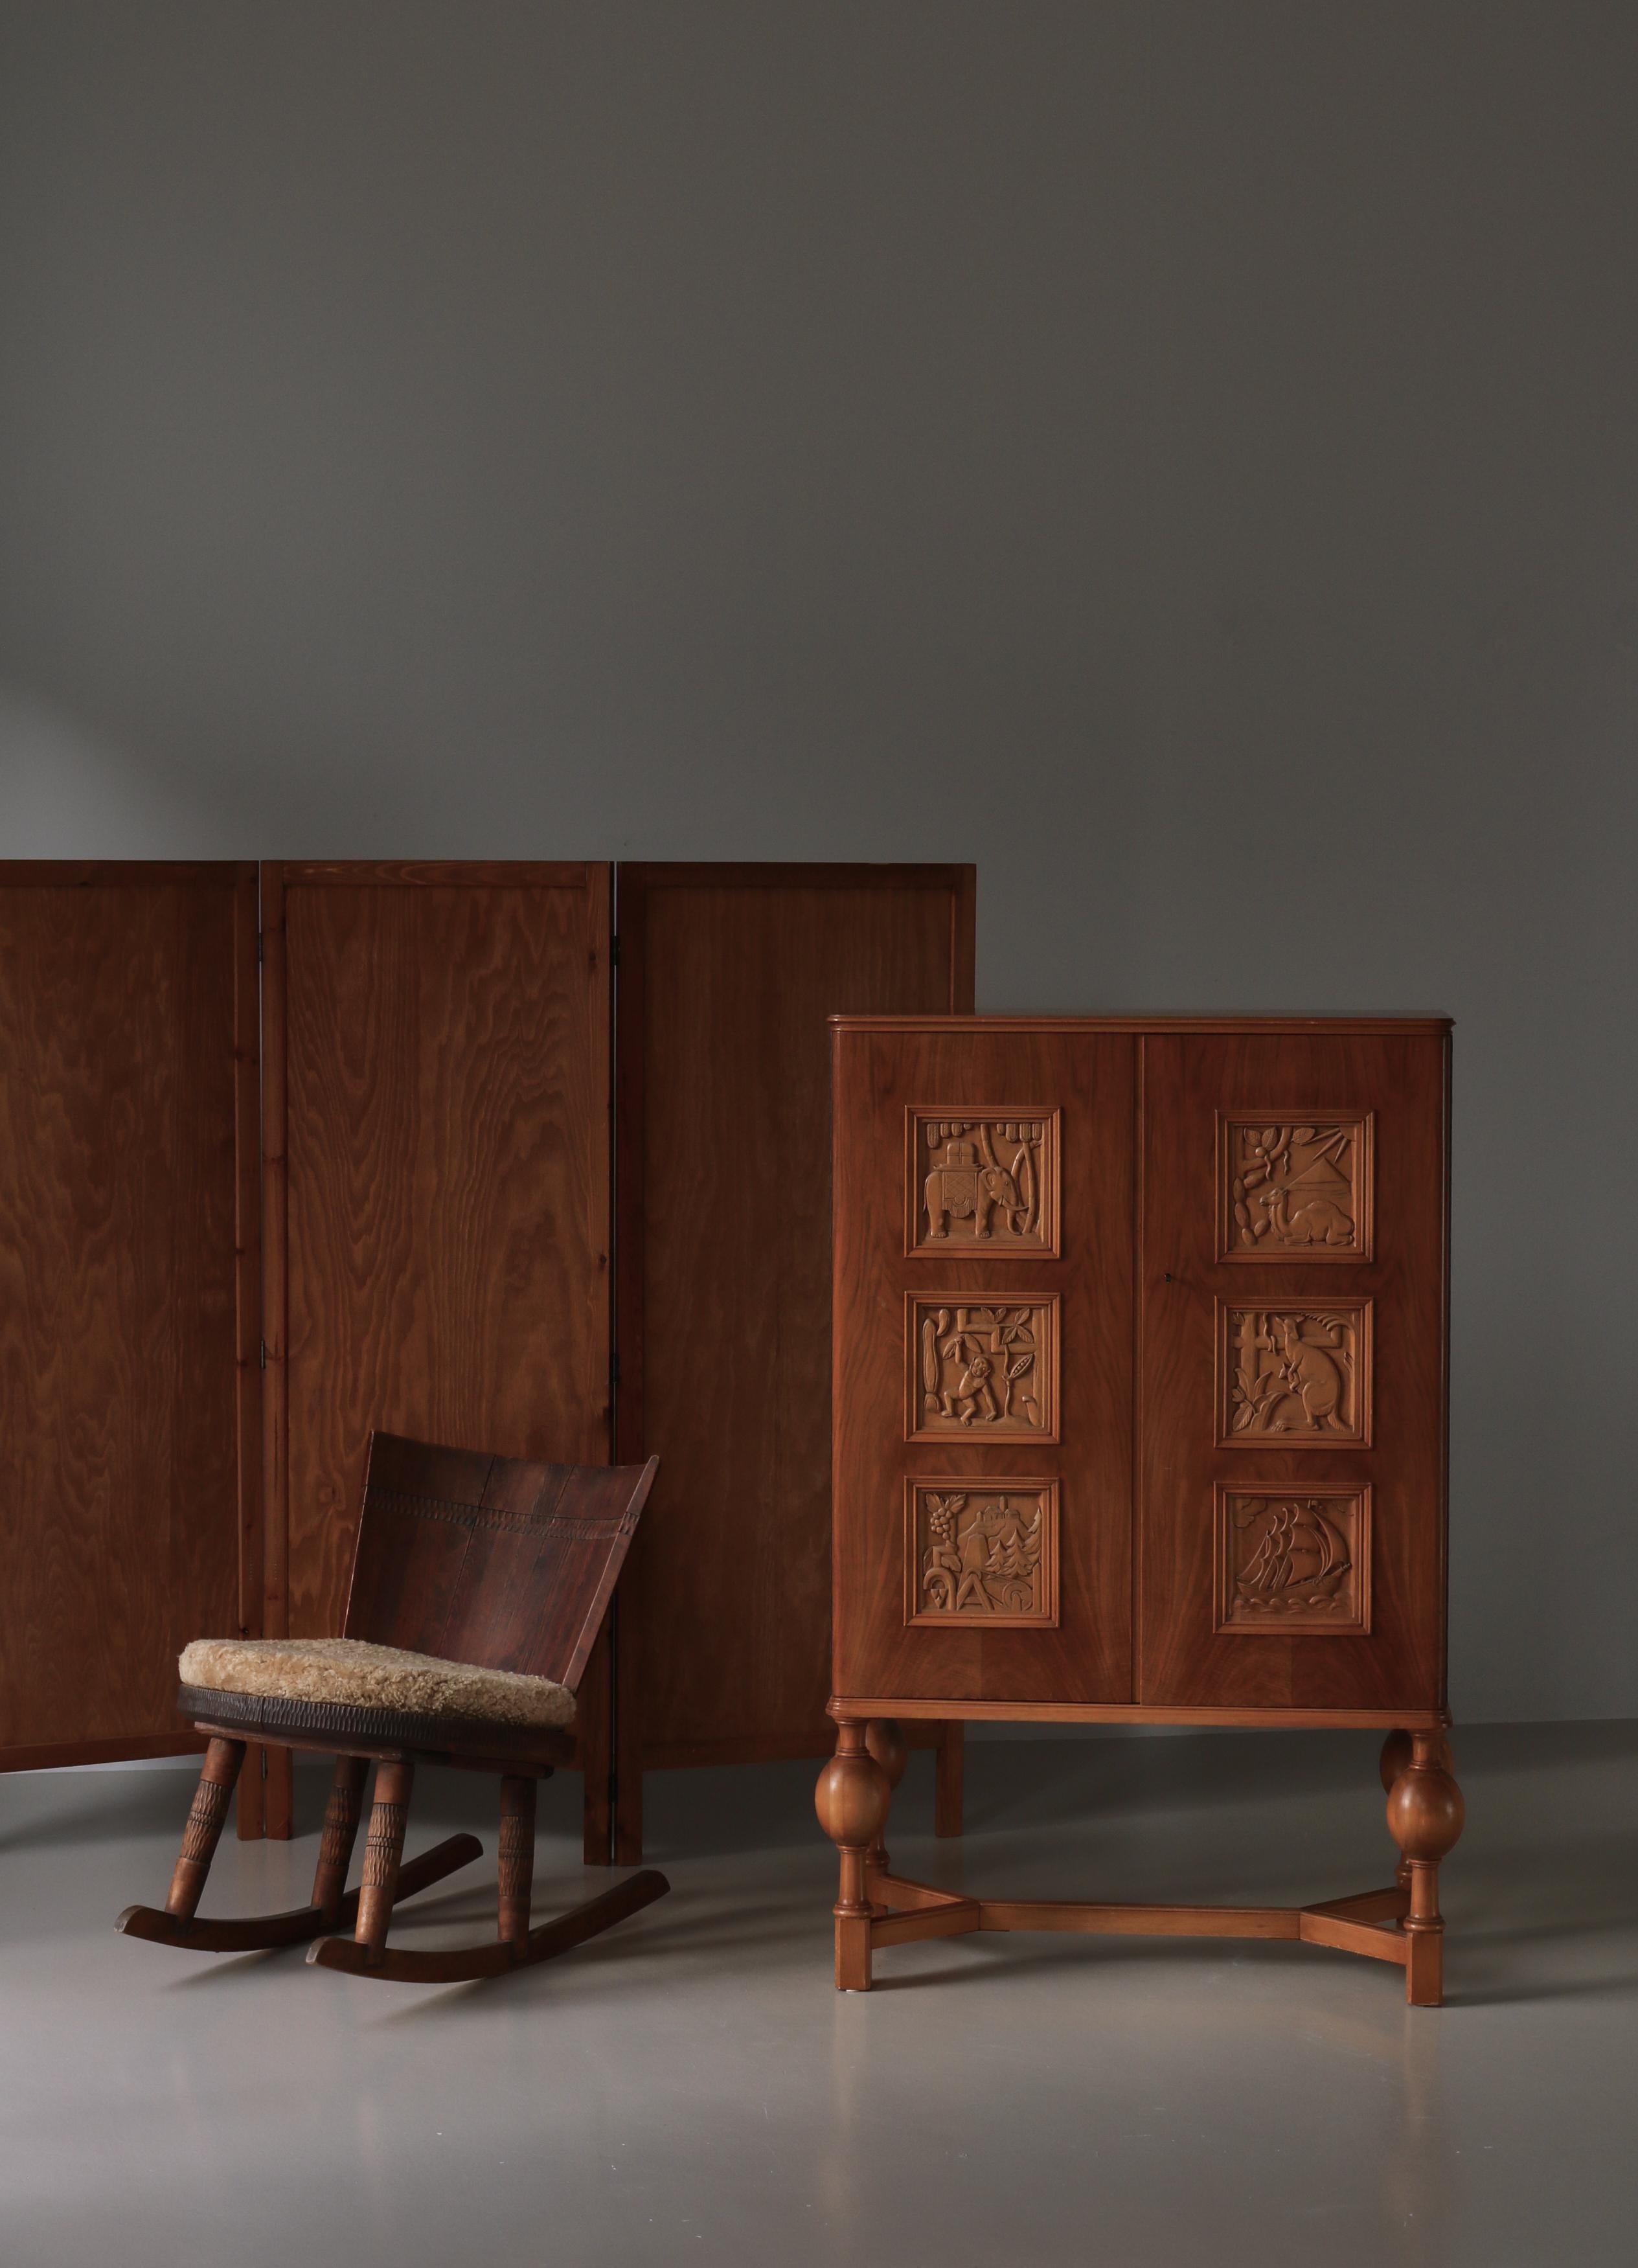 Magnifique armoire suédoise Grace du designer suédois Eugen Höglund avec 6 magnifiques panneaux sculptés à la main représentant divers animaux et paysages en bois fruitier et en hêtre. Le meuble dispose de deux étagères intérieures et de deux